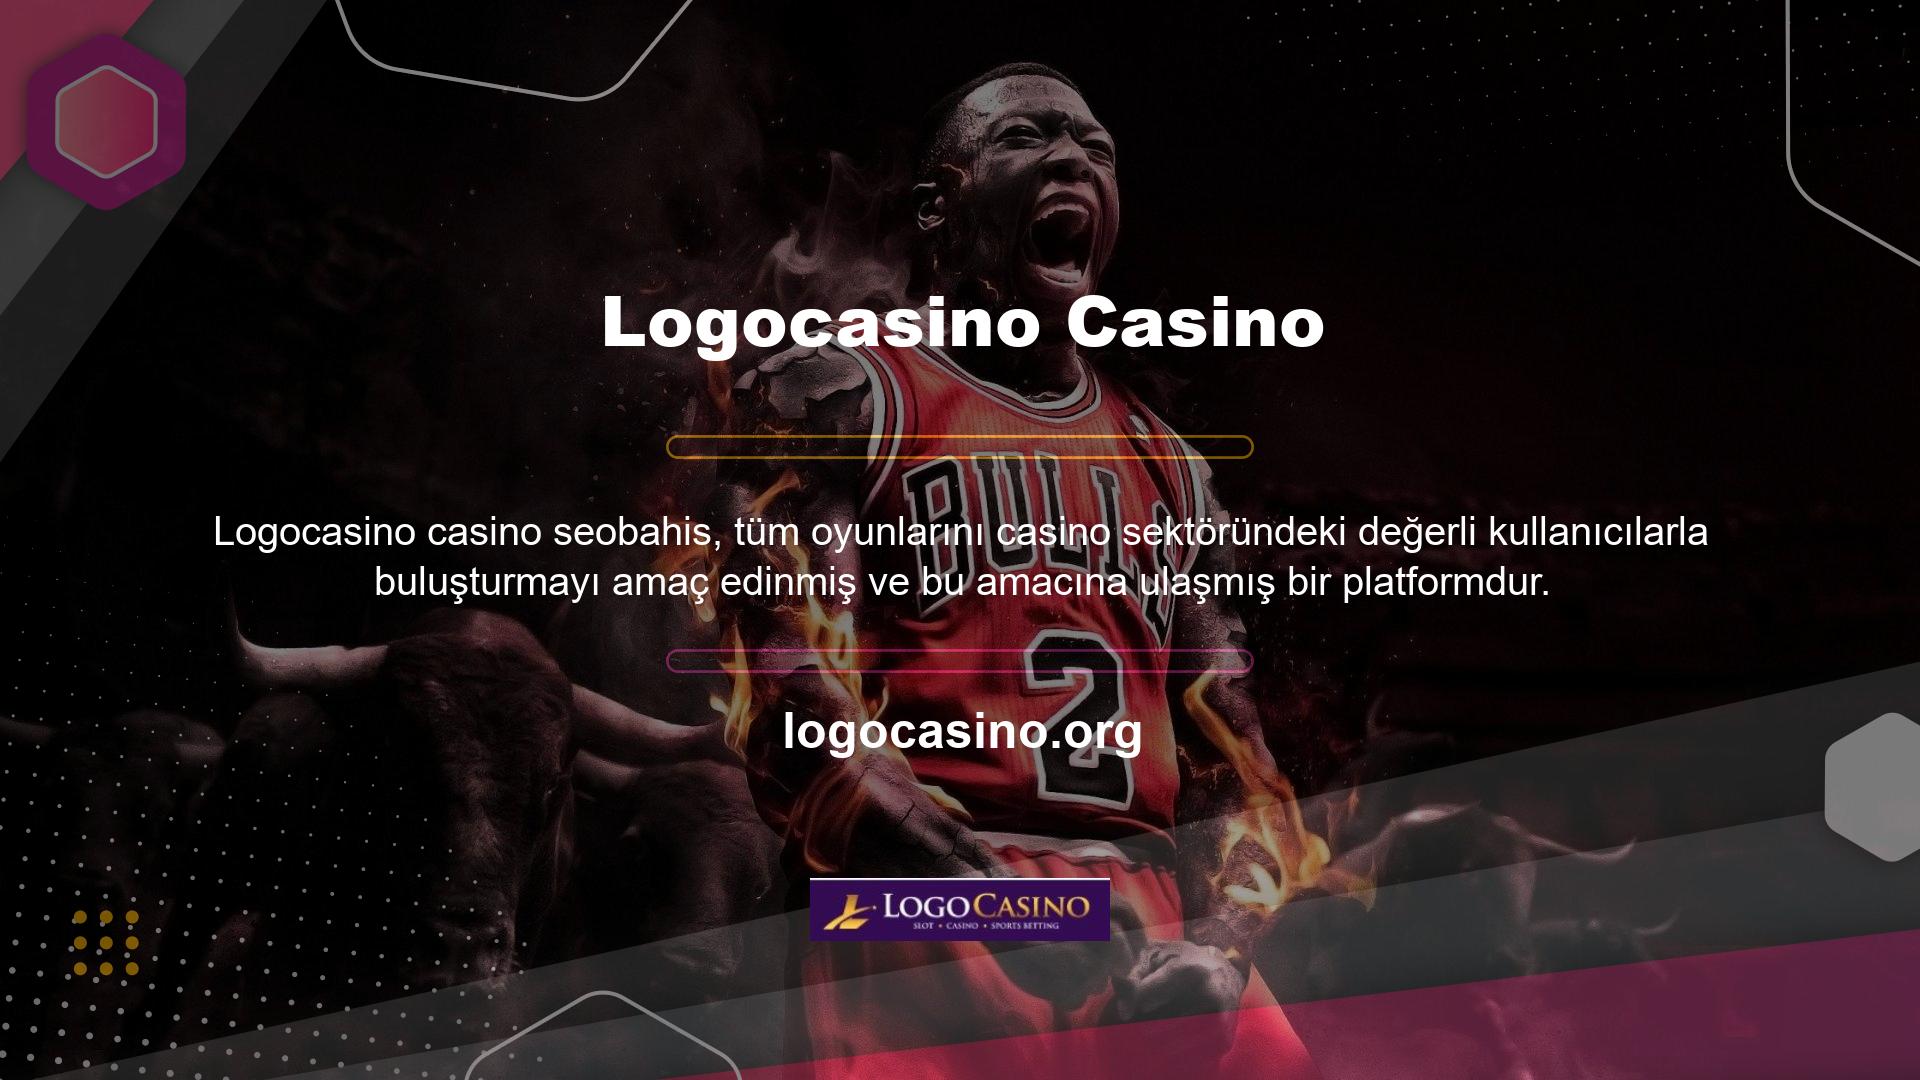 Logocasino para yatırma işleminizi takip edin ve tüm casino oyunlarına tek bir sayfadan erişin